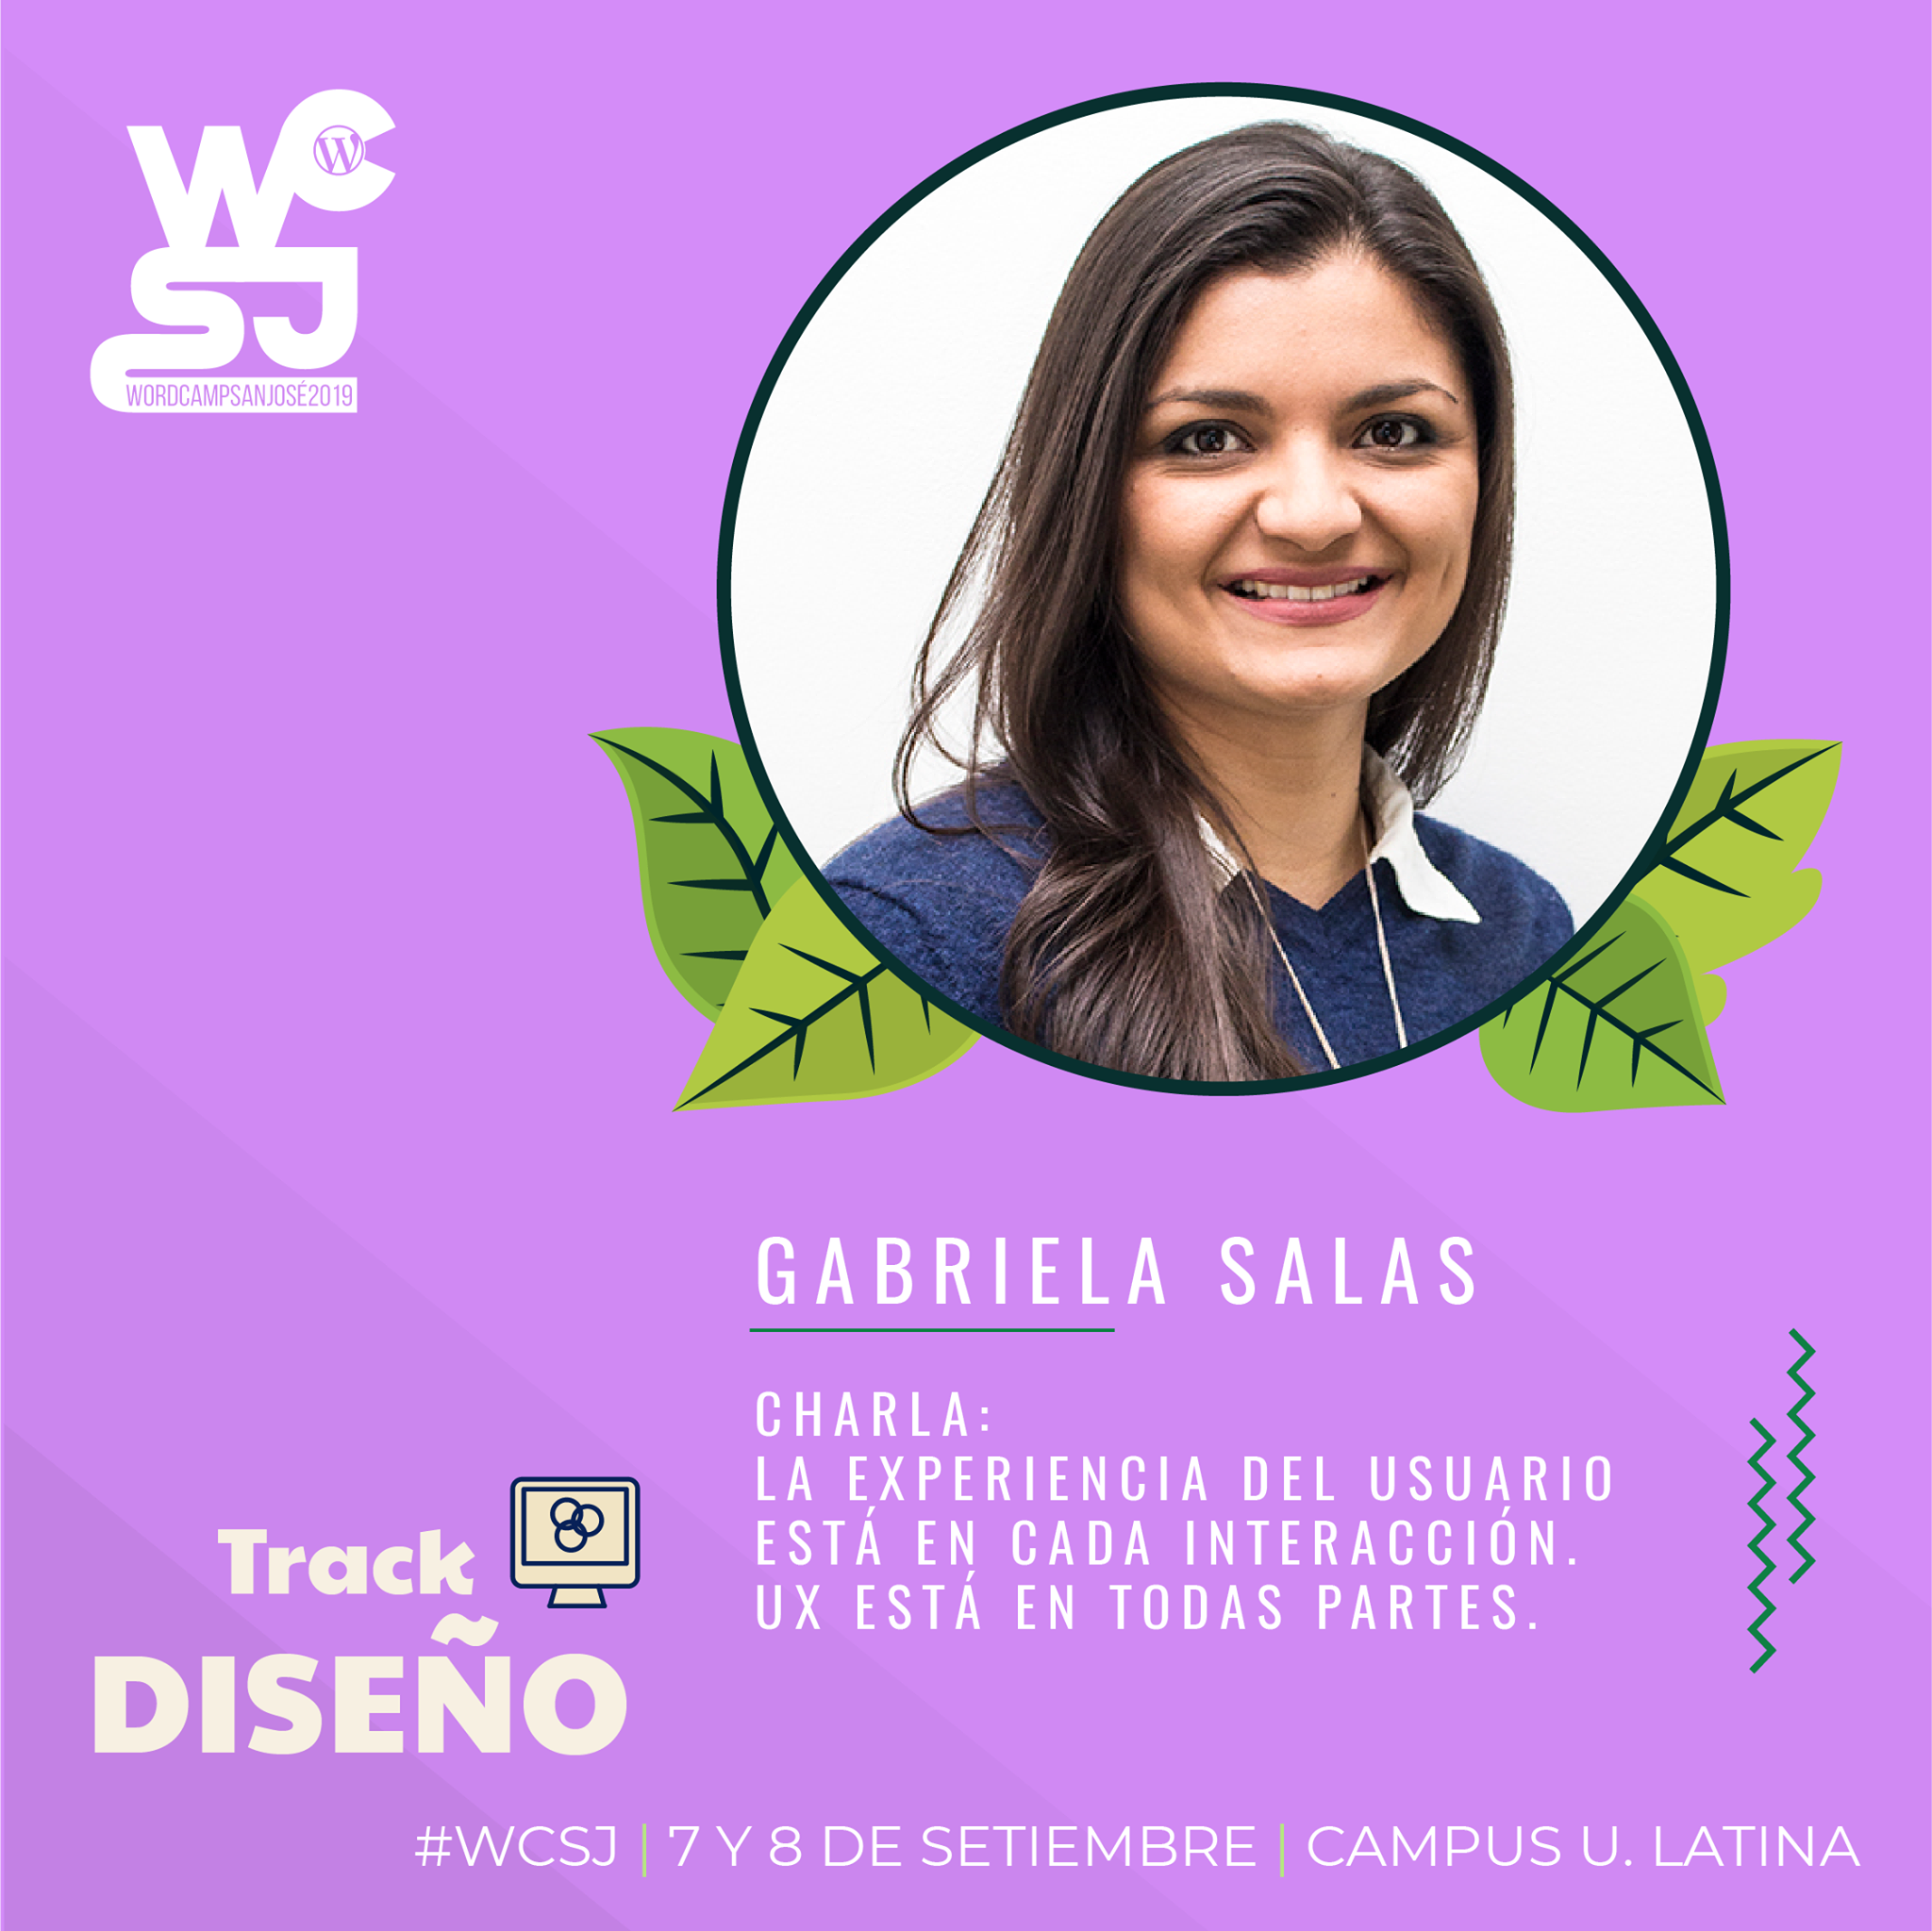 Gabriela Salas